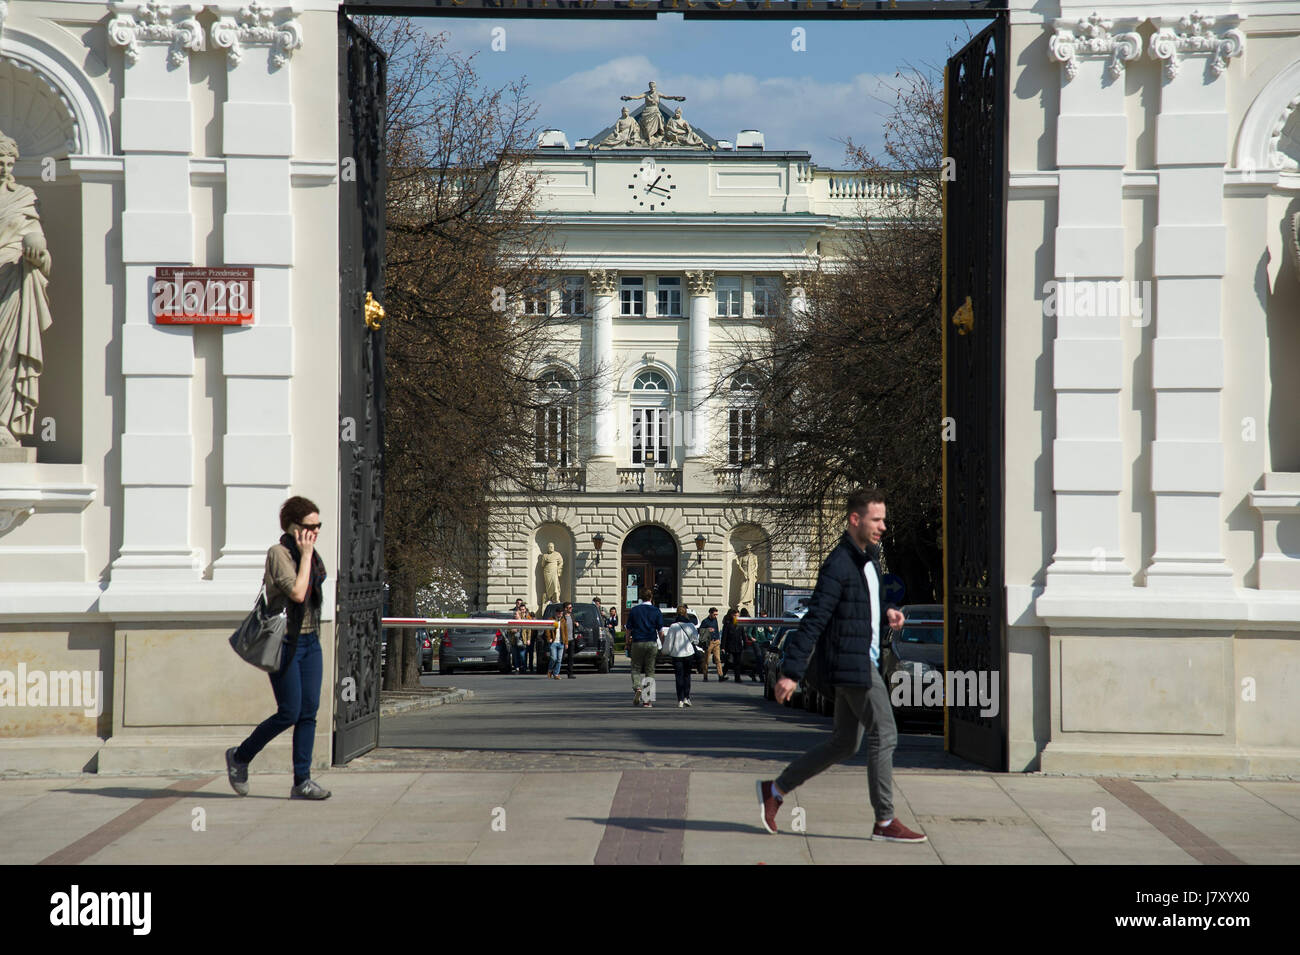 Main gate to University of Warsaw (Uniwersytet Warszawski) in Warsaw, Poland © Wojciech Strozyk / Alamy Stock Photo Stock Photo